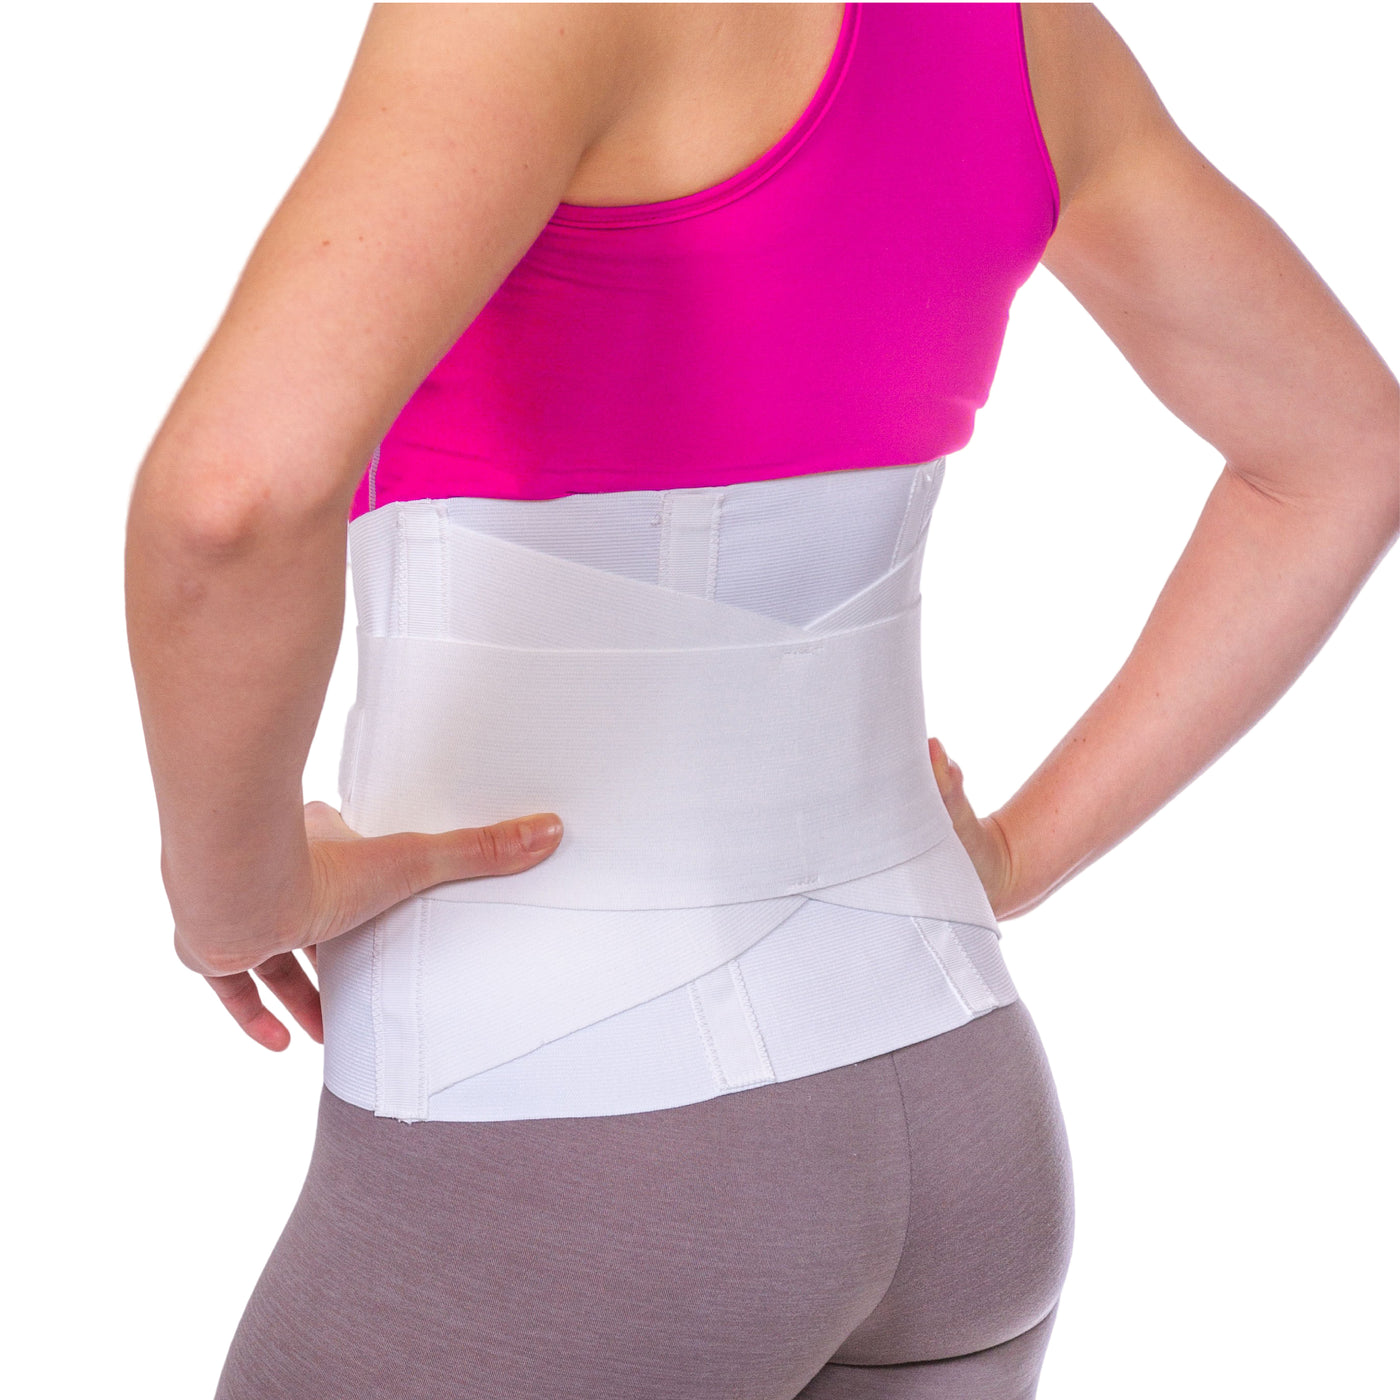 Tcare Posture Corrector for Women Men,Adjustable Upper Back Brace